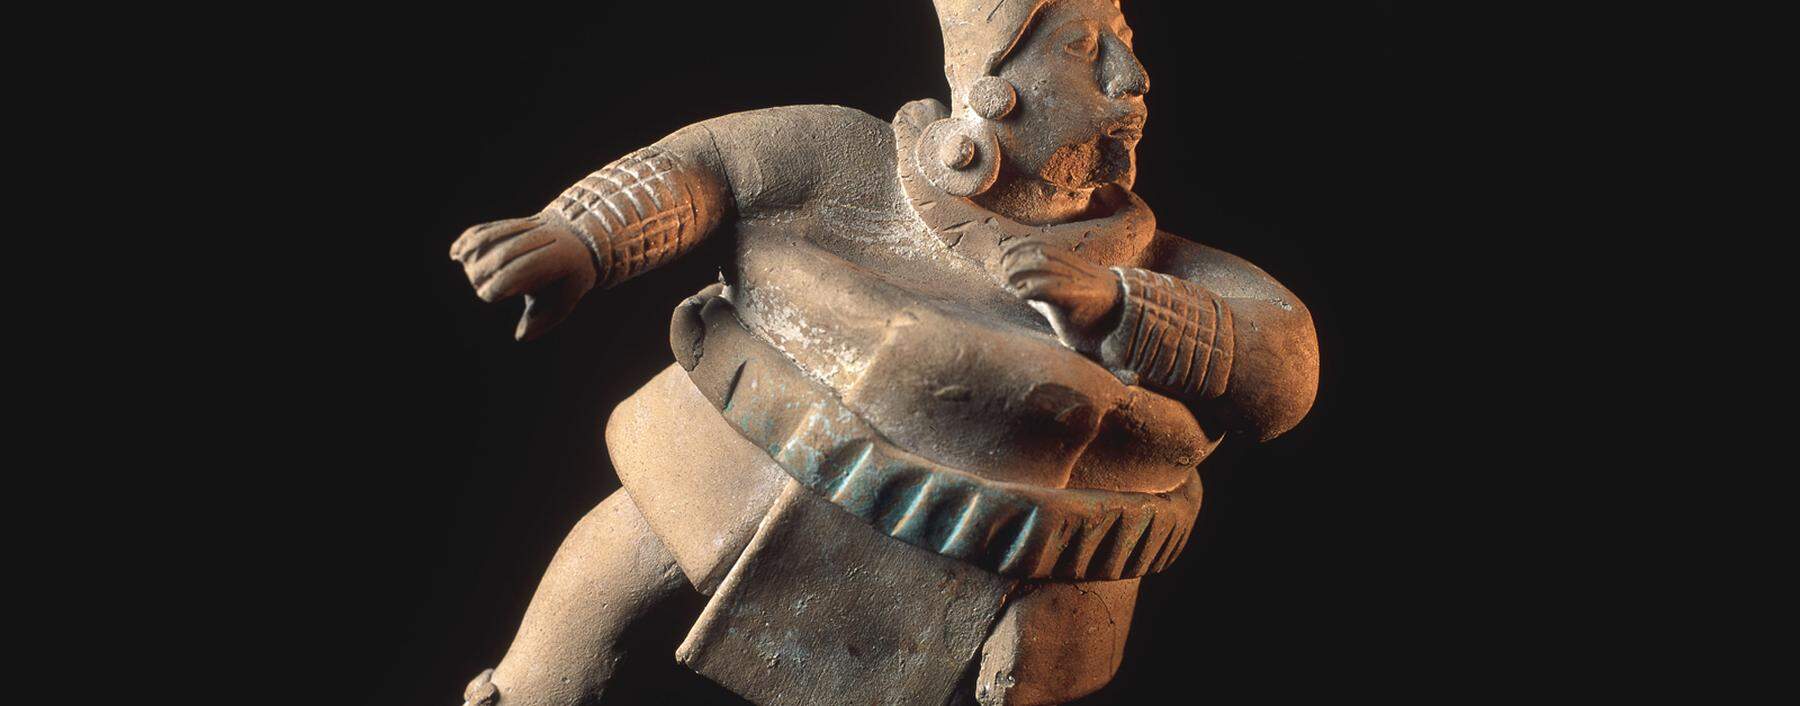 Terrakottafigur eines Ballspielers aus der klassischen Zeit der Mayakultur um 500 n. Chr.